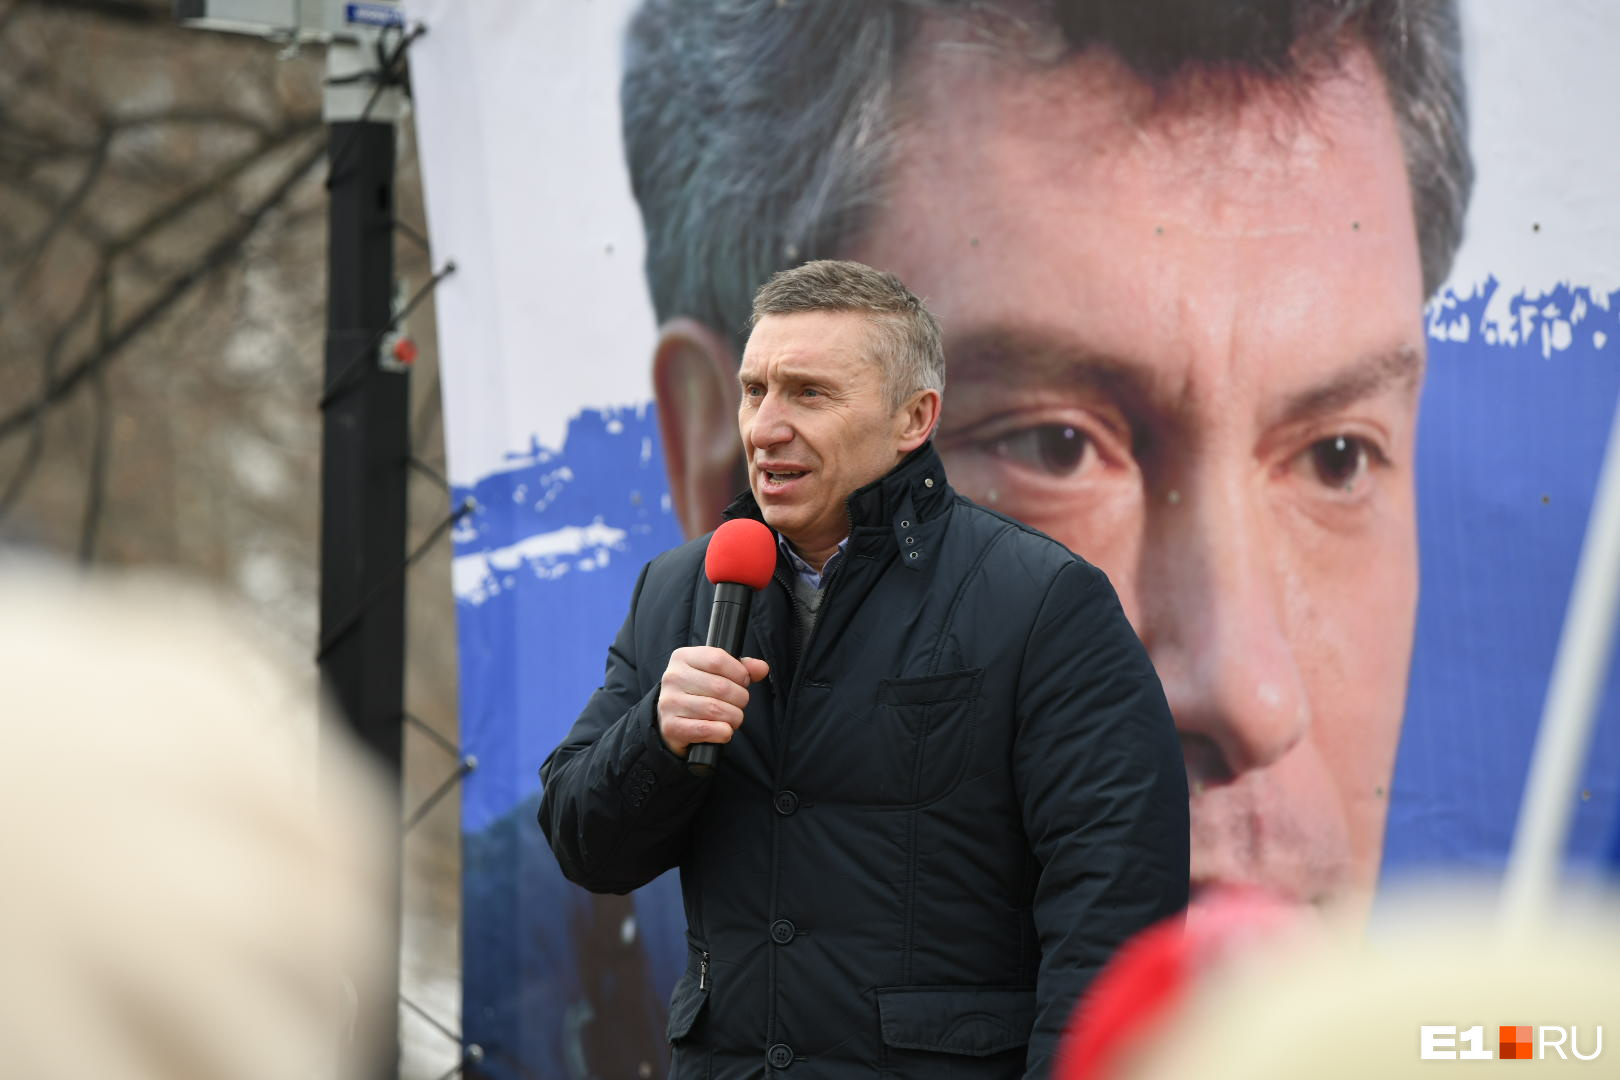 Бывший депутат гордумы Дмитрий Головин также поднялся на сцену